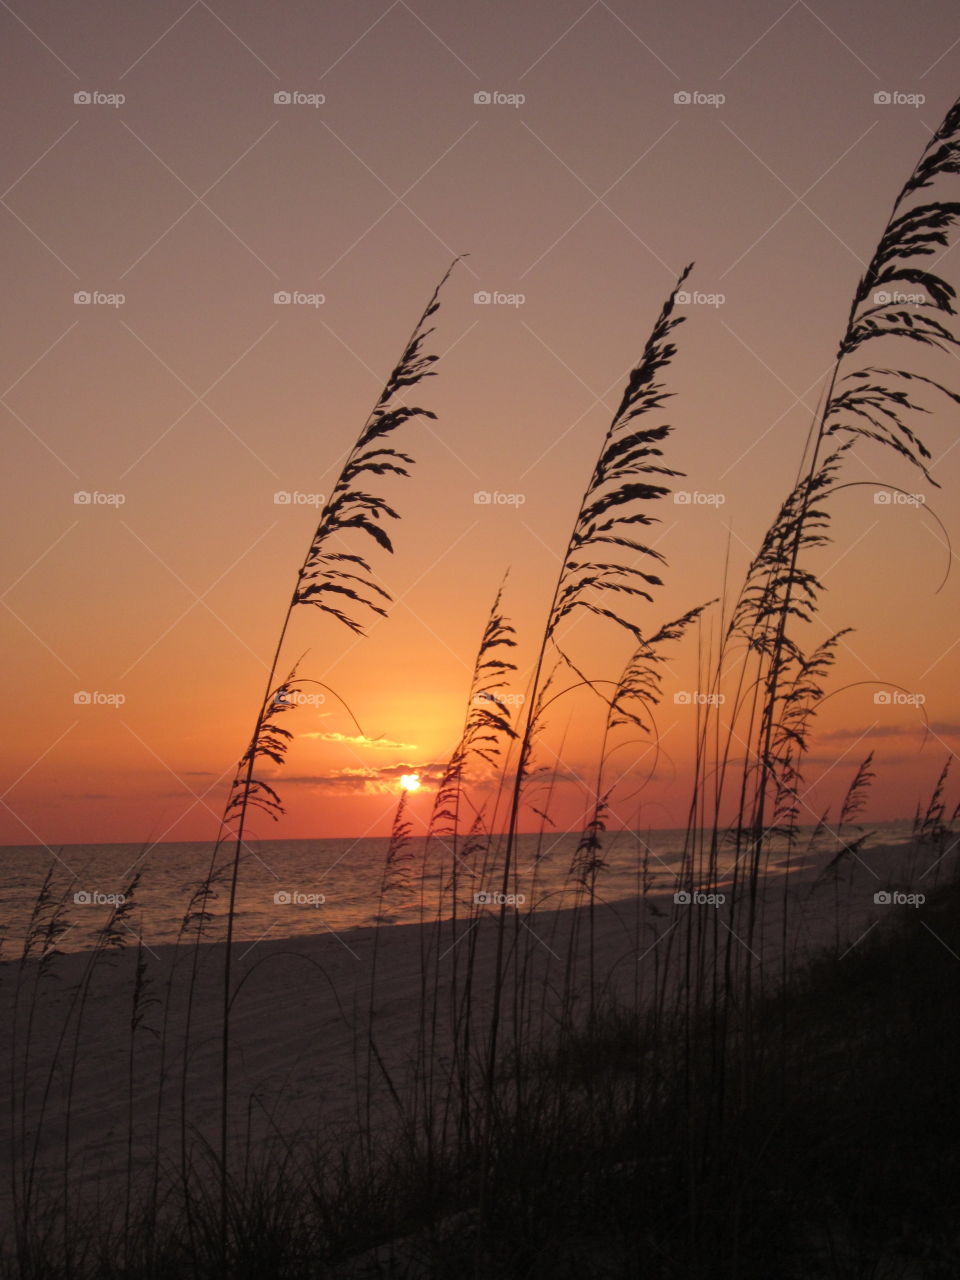 Sea Grass Sunset. A sunset shot captured on a Florida beach. 